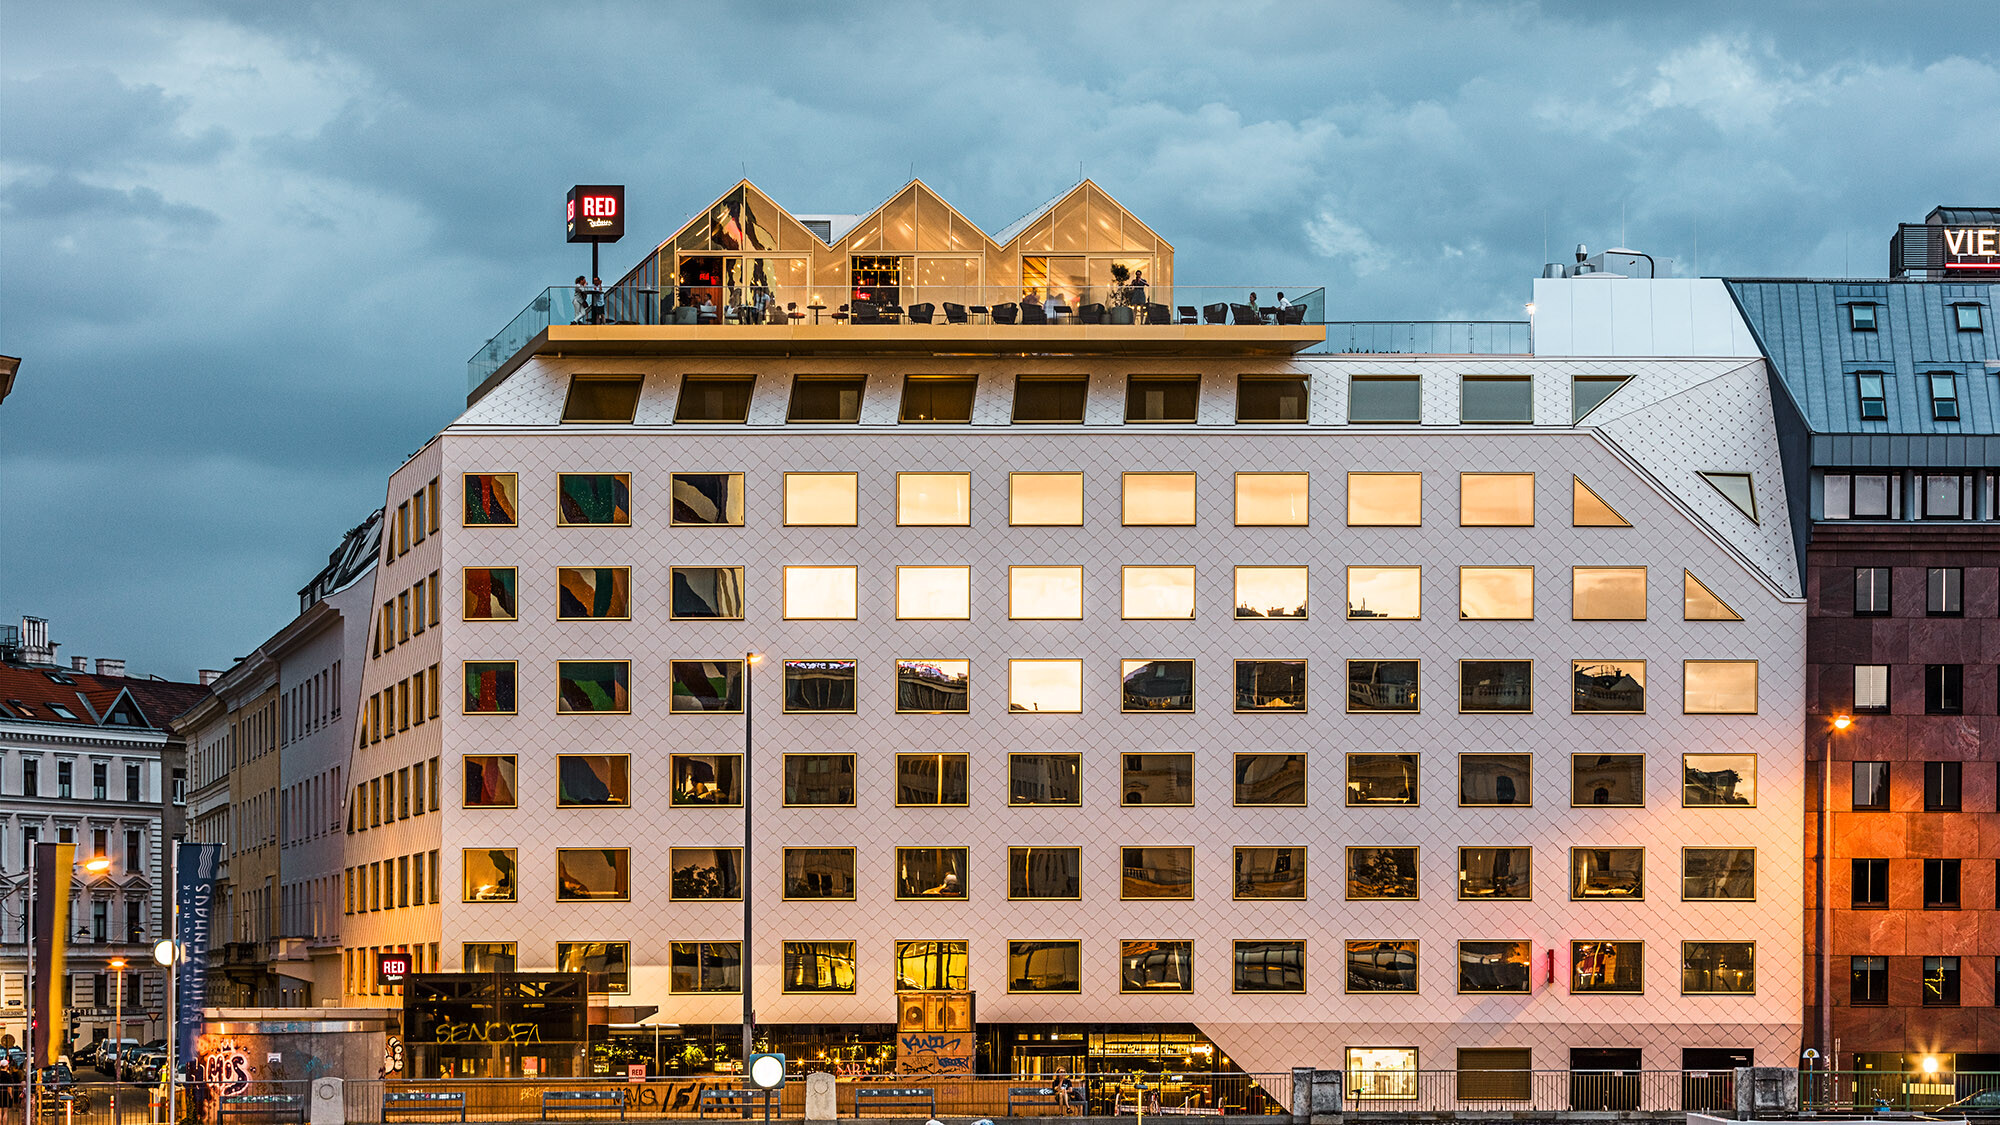 Eine Abendaufnahme des Hotels THE ROCK Radisson RED Vienna samt seiner belebten Umgebung; die gegenüberliegenden Gebäude spiegeln sich in seinen Fenstern.